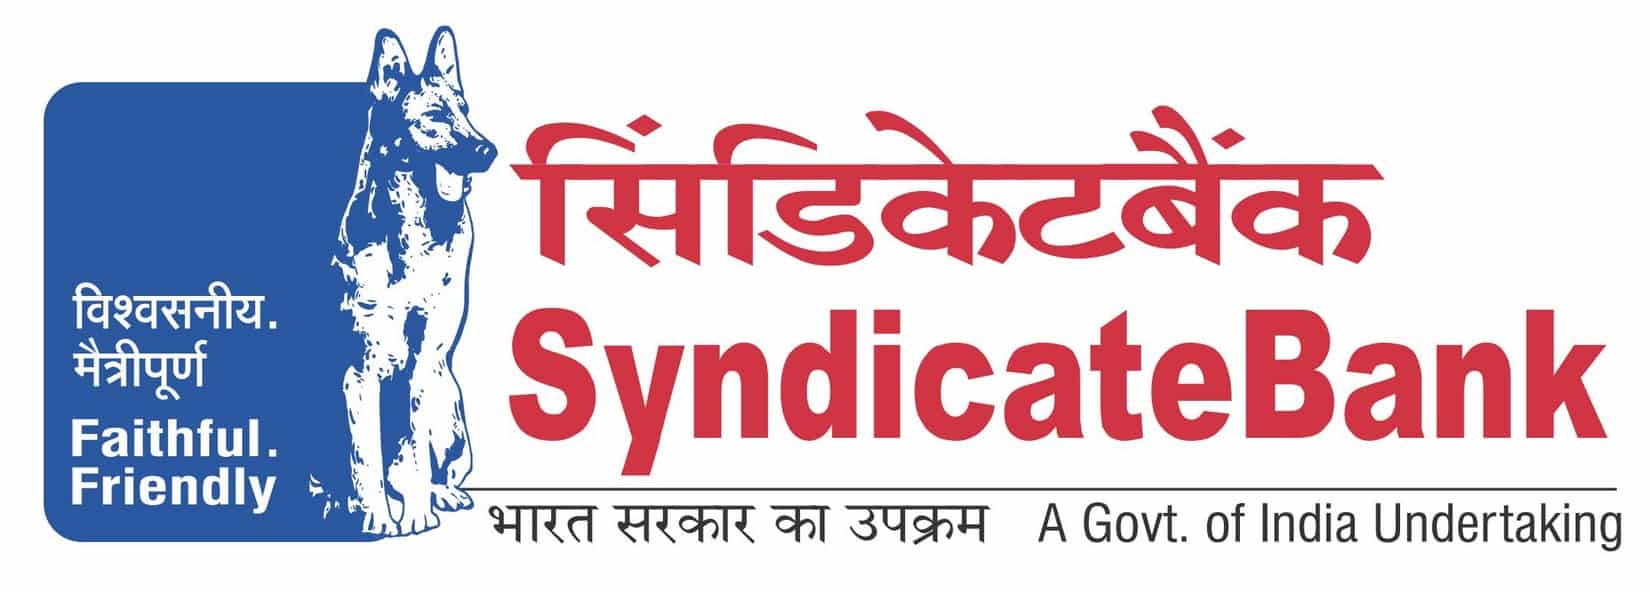 syndicate bank logo